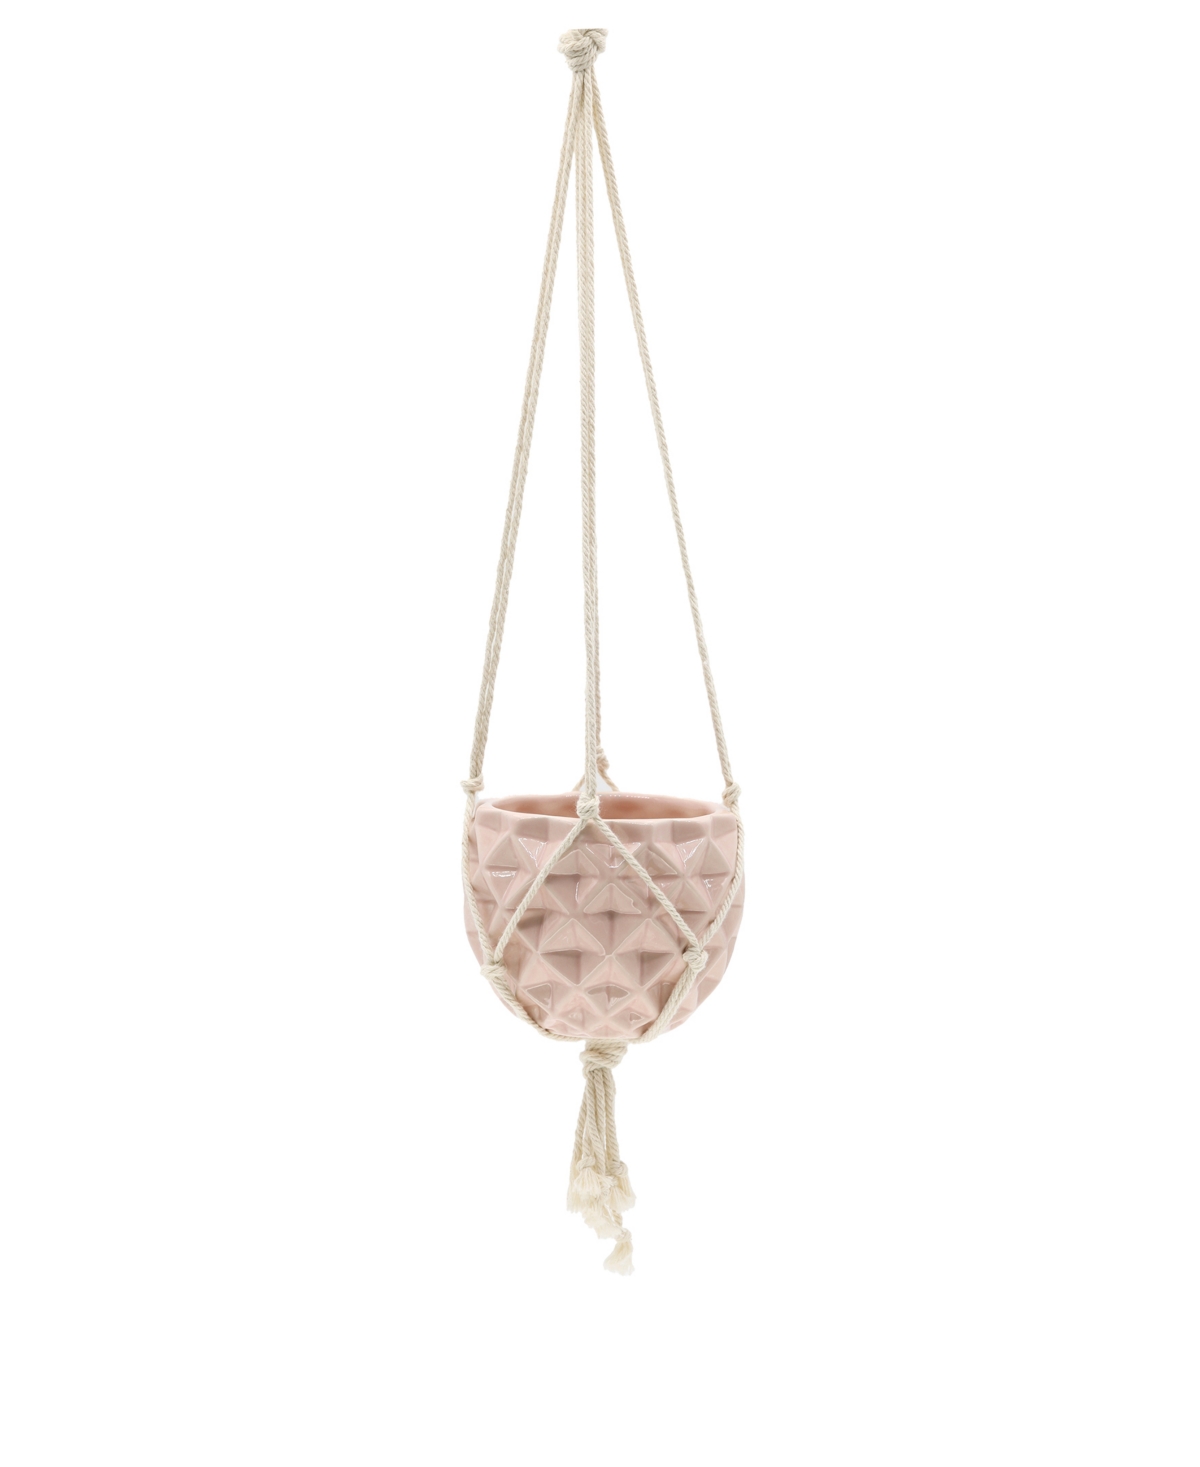 Ceramic Macrame Hanging Planter, 5" x 5" - Pink